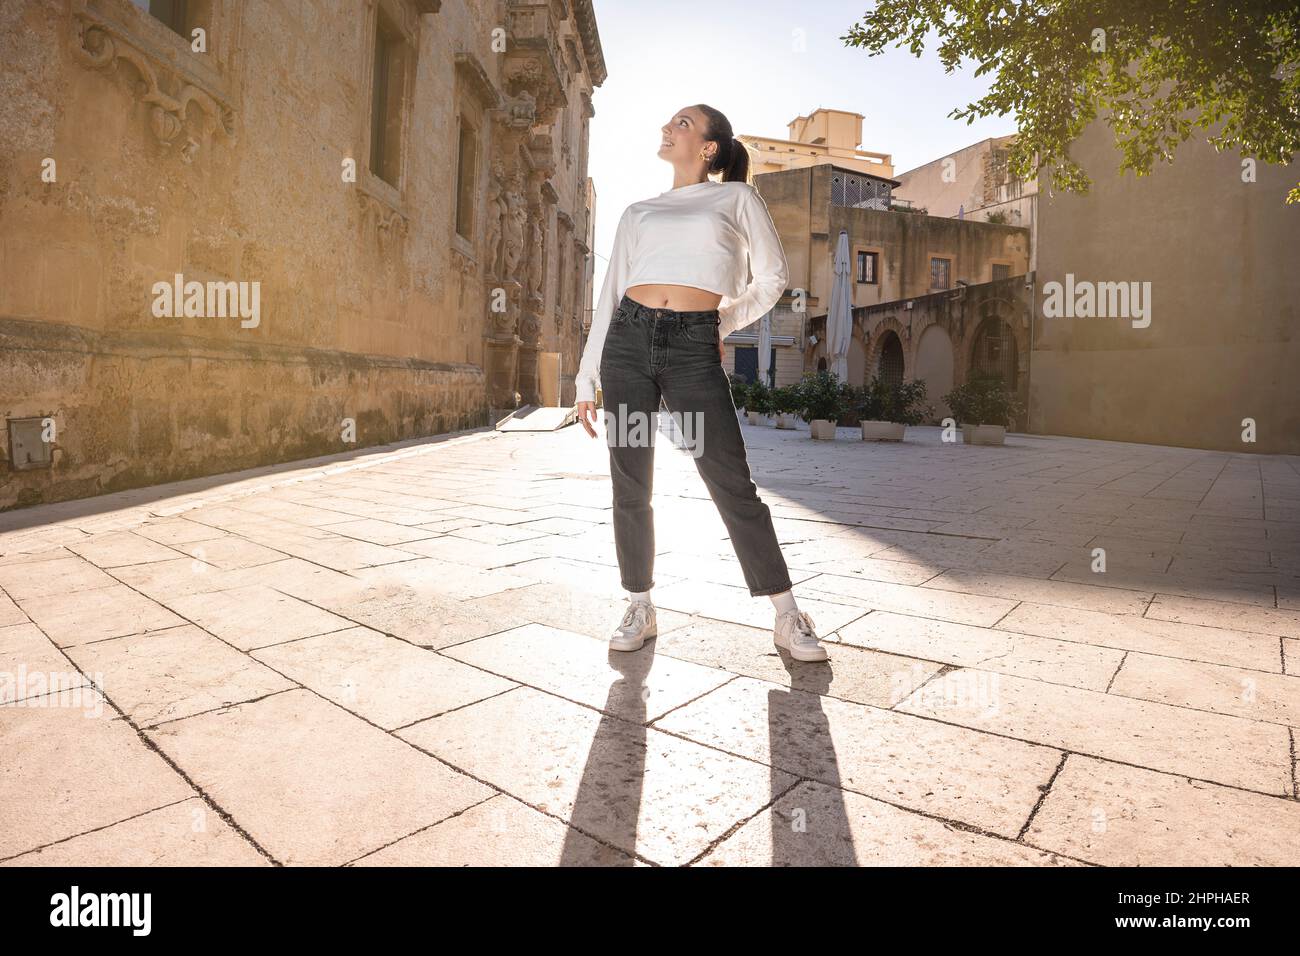 Retrato completo de la mujer joven en una plaza en el país mediterráneo Foto de stock